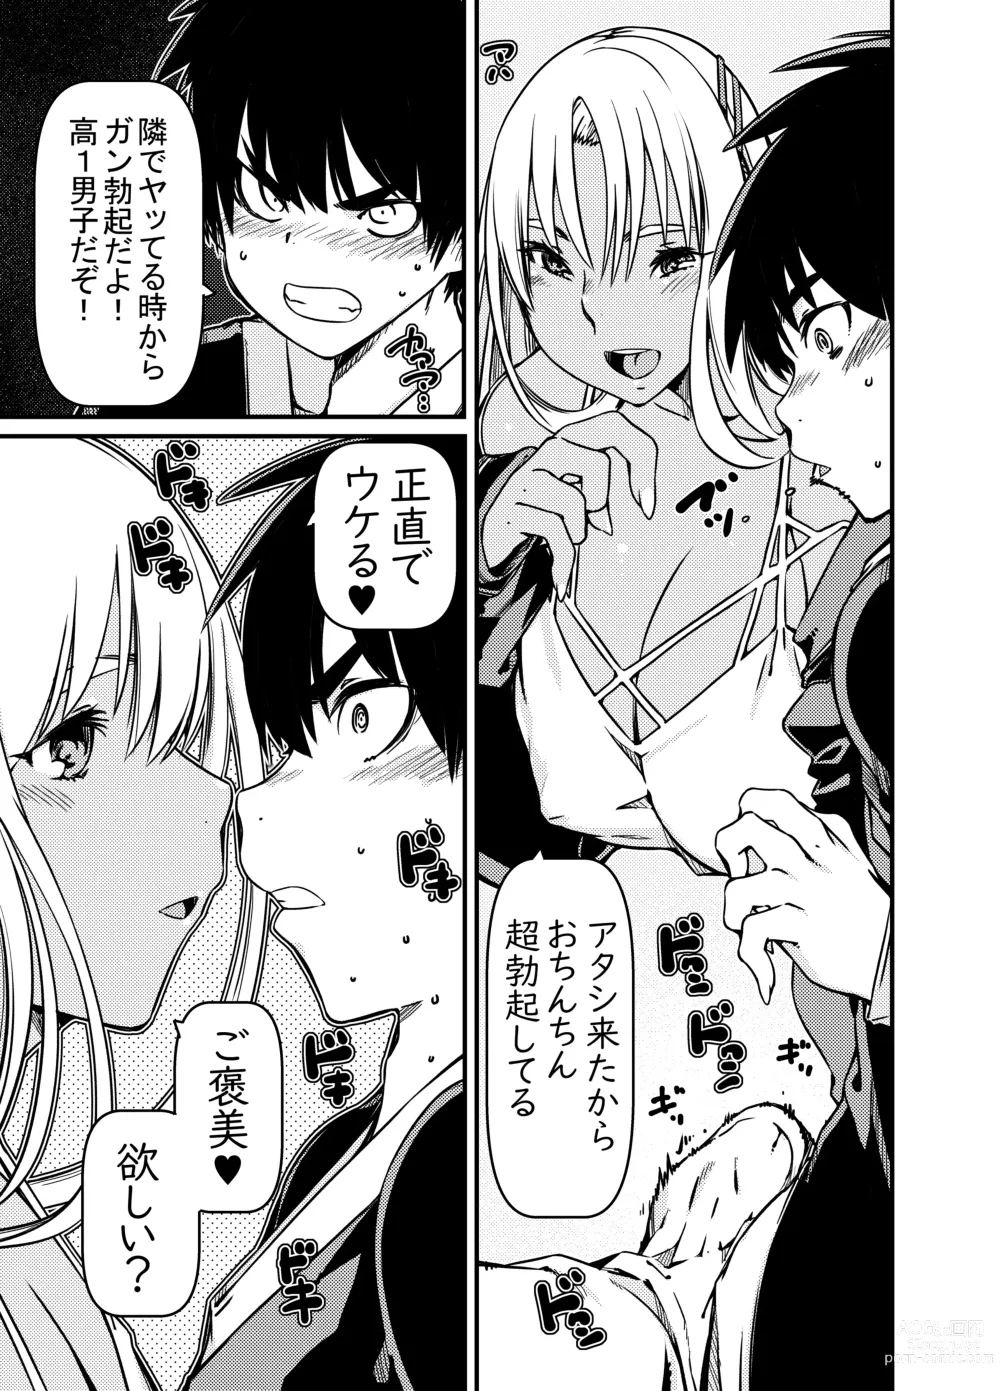 Page 12 of doujinshi Aniki no Kanojo no Kuro Gal to Heya ni Tojikomeraretan dakedo?